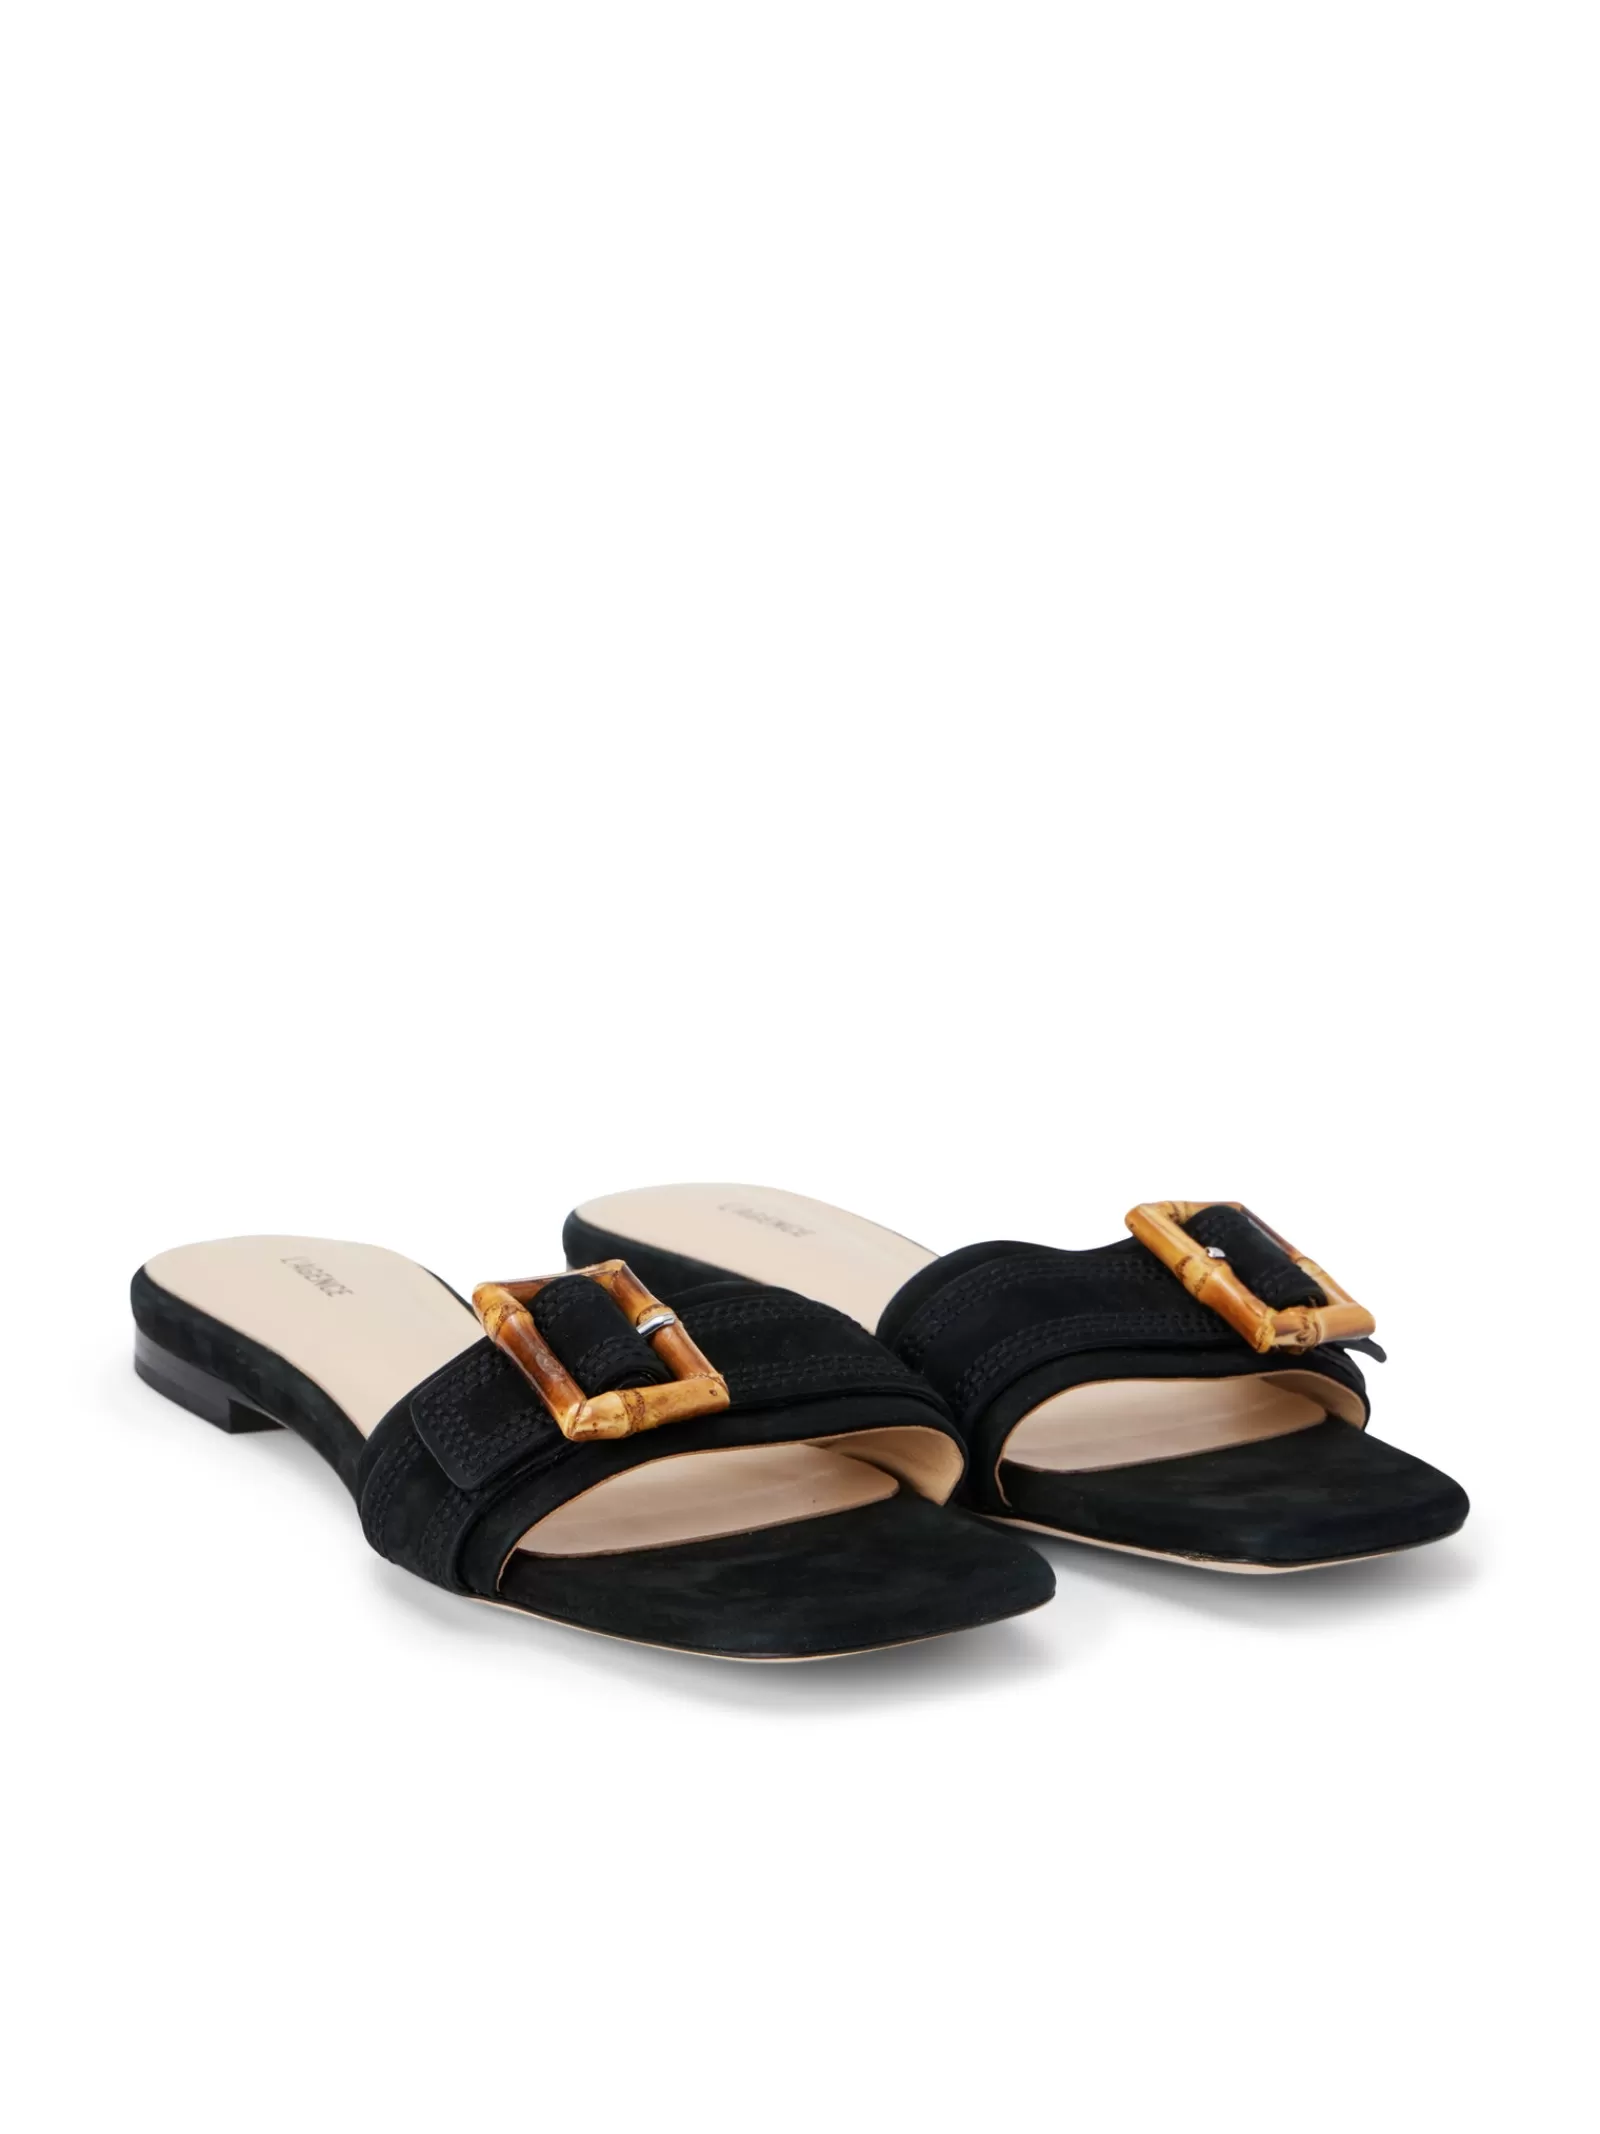 L'AGENCE Aurelie Buckle Slide Sandal< Spring Collection | Sandals & Wedges